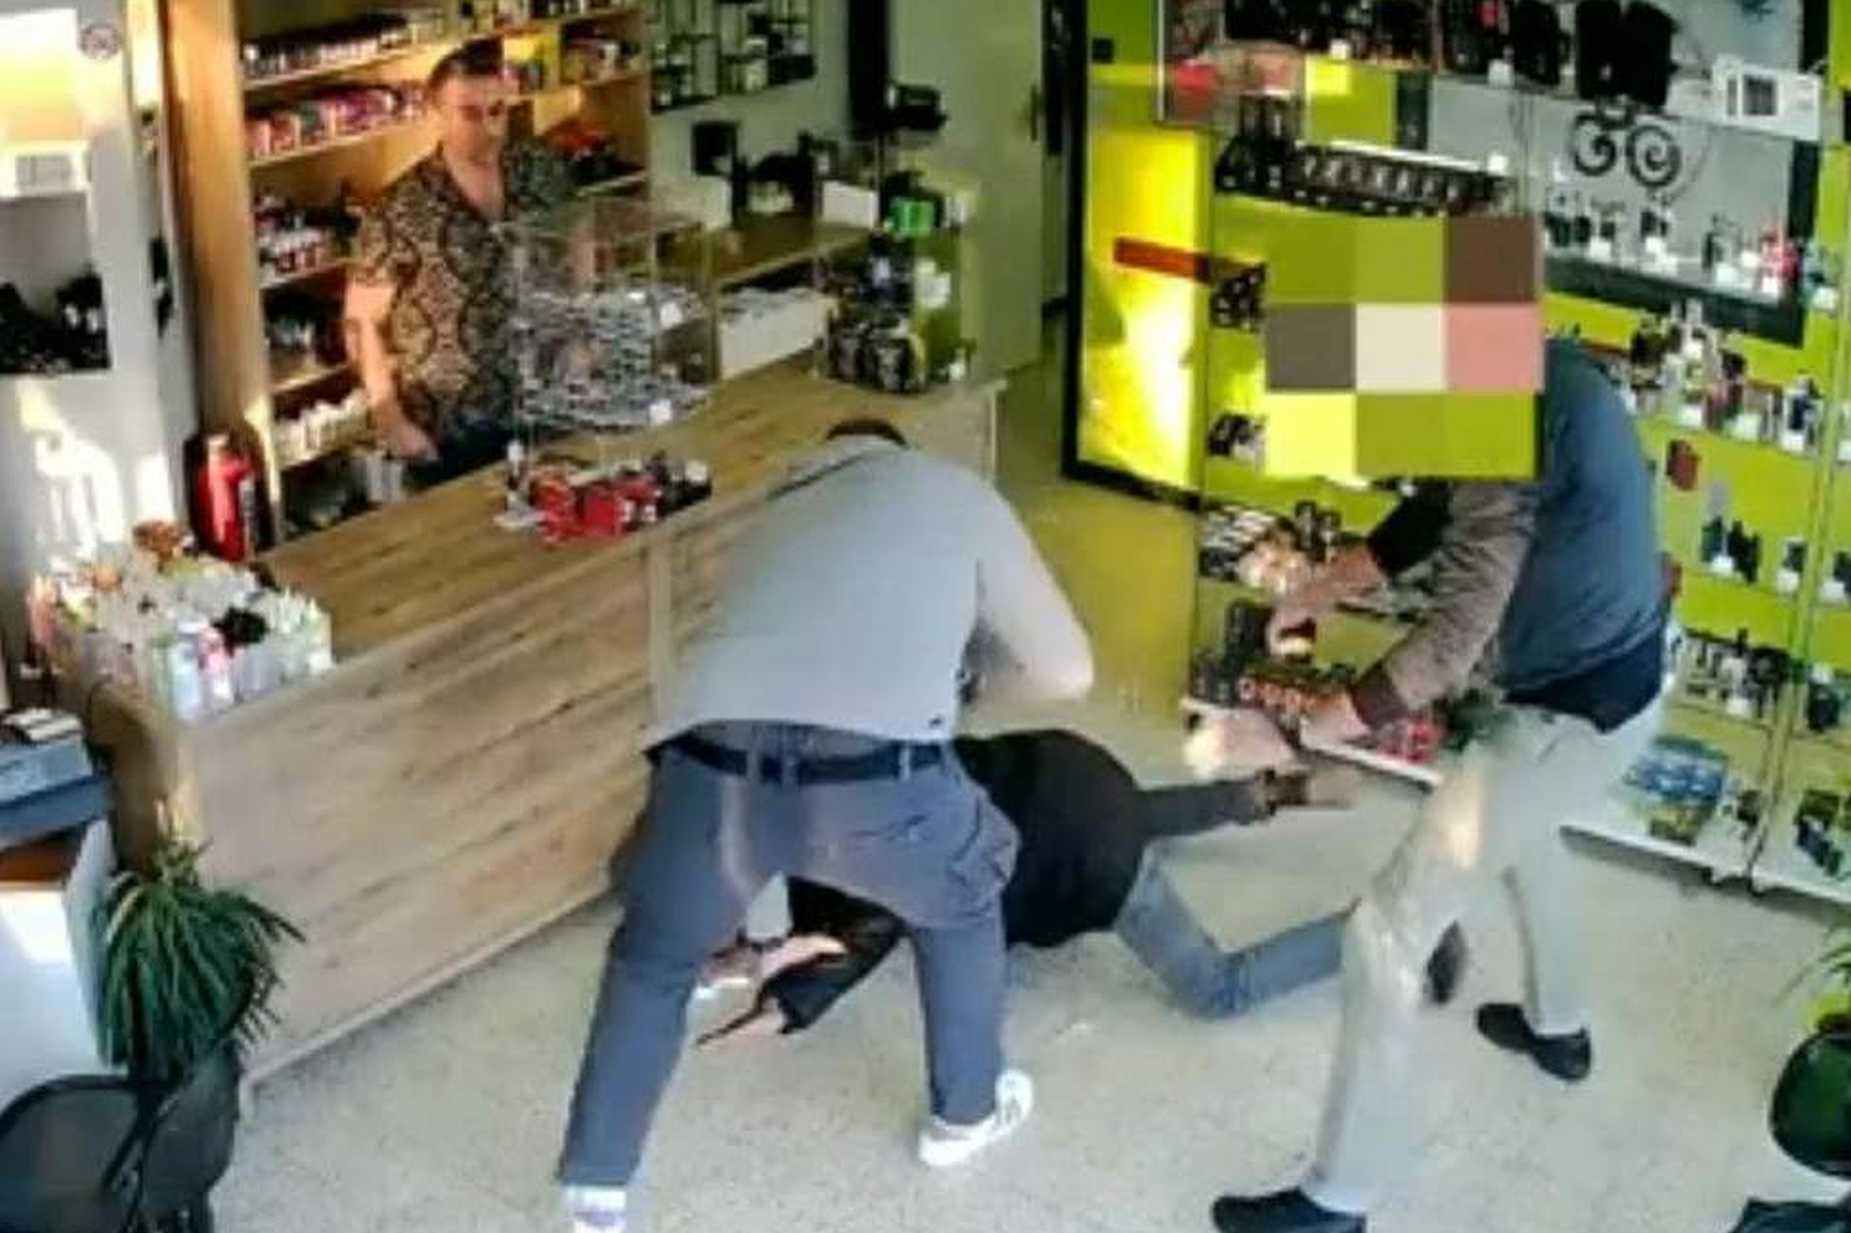 belgian-robbers-caught.jpg